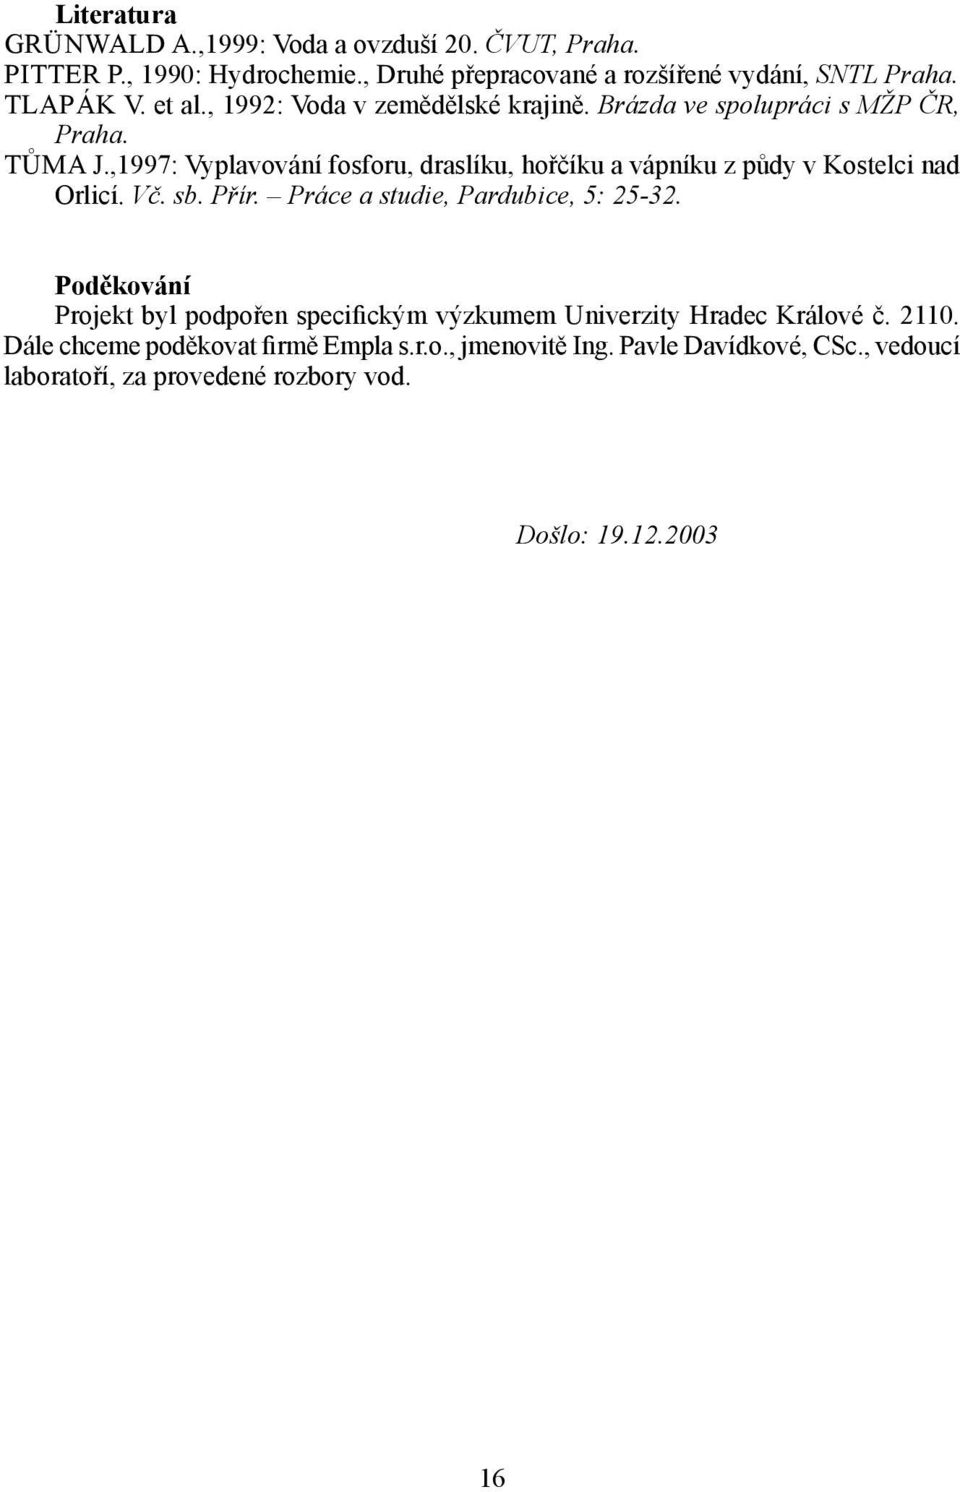 ,1997: Vyplavování fosforu, draslíku, hořčíku a vápníku z půdy v Kostelci nad Orlicí. Vč. sb. Přír. Práce a studie, Pardubice, 5: 2532.